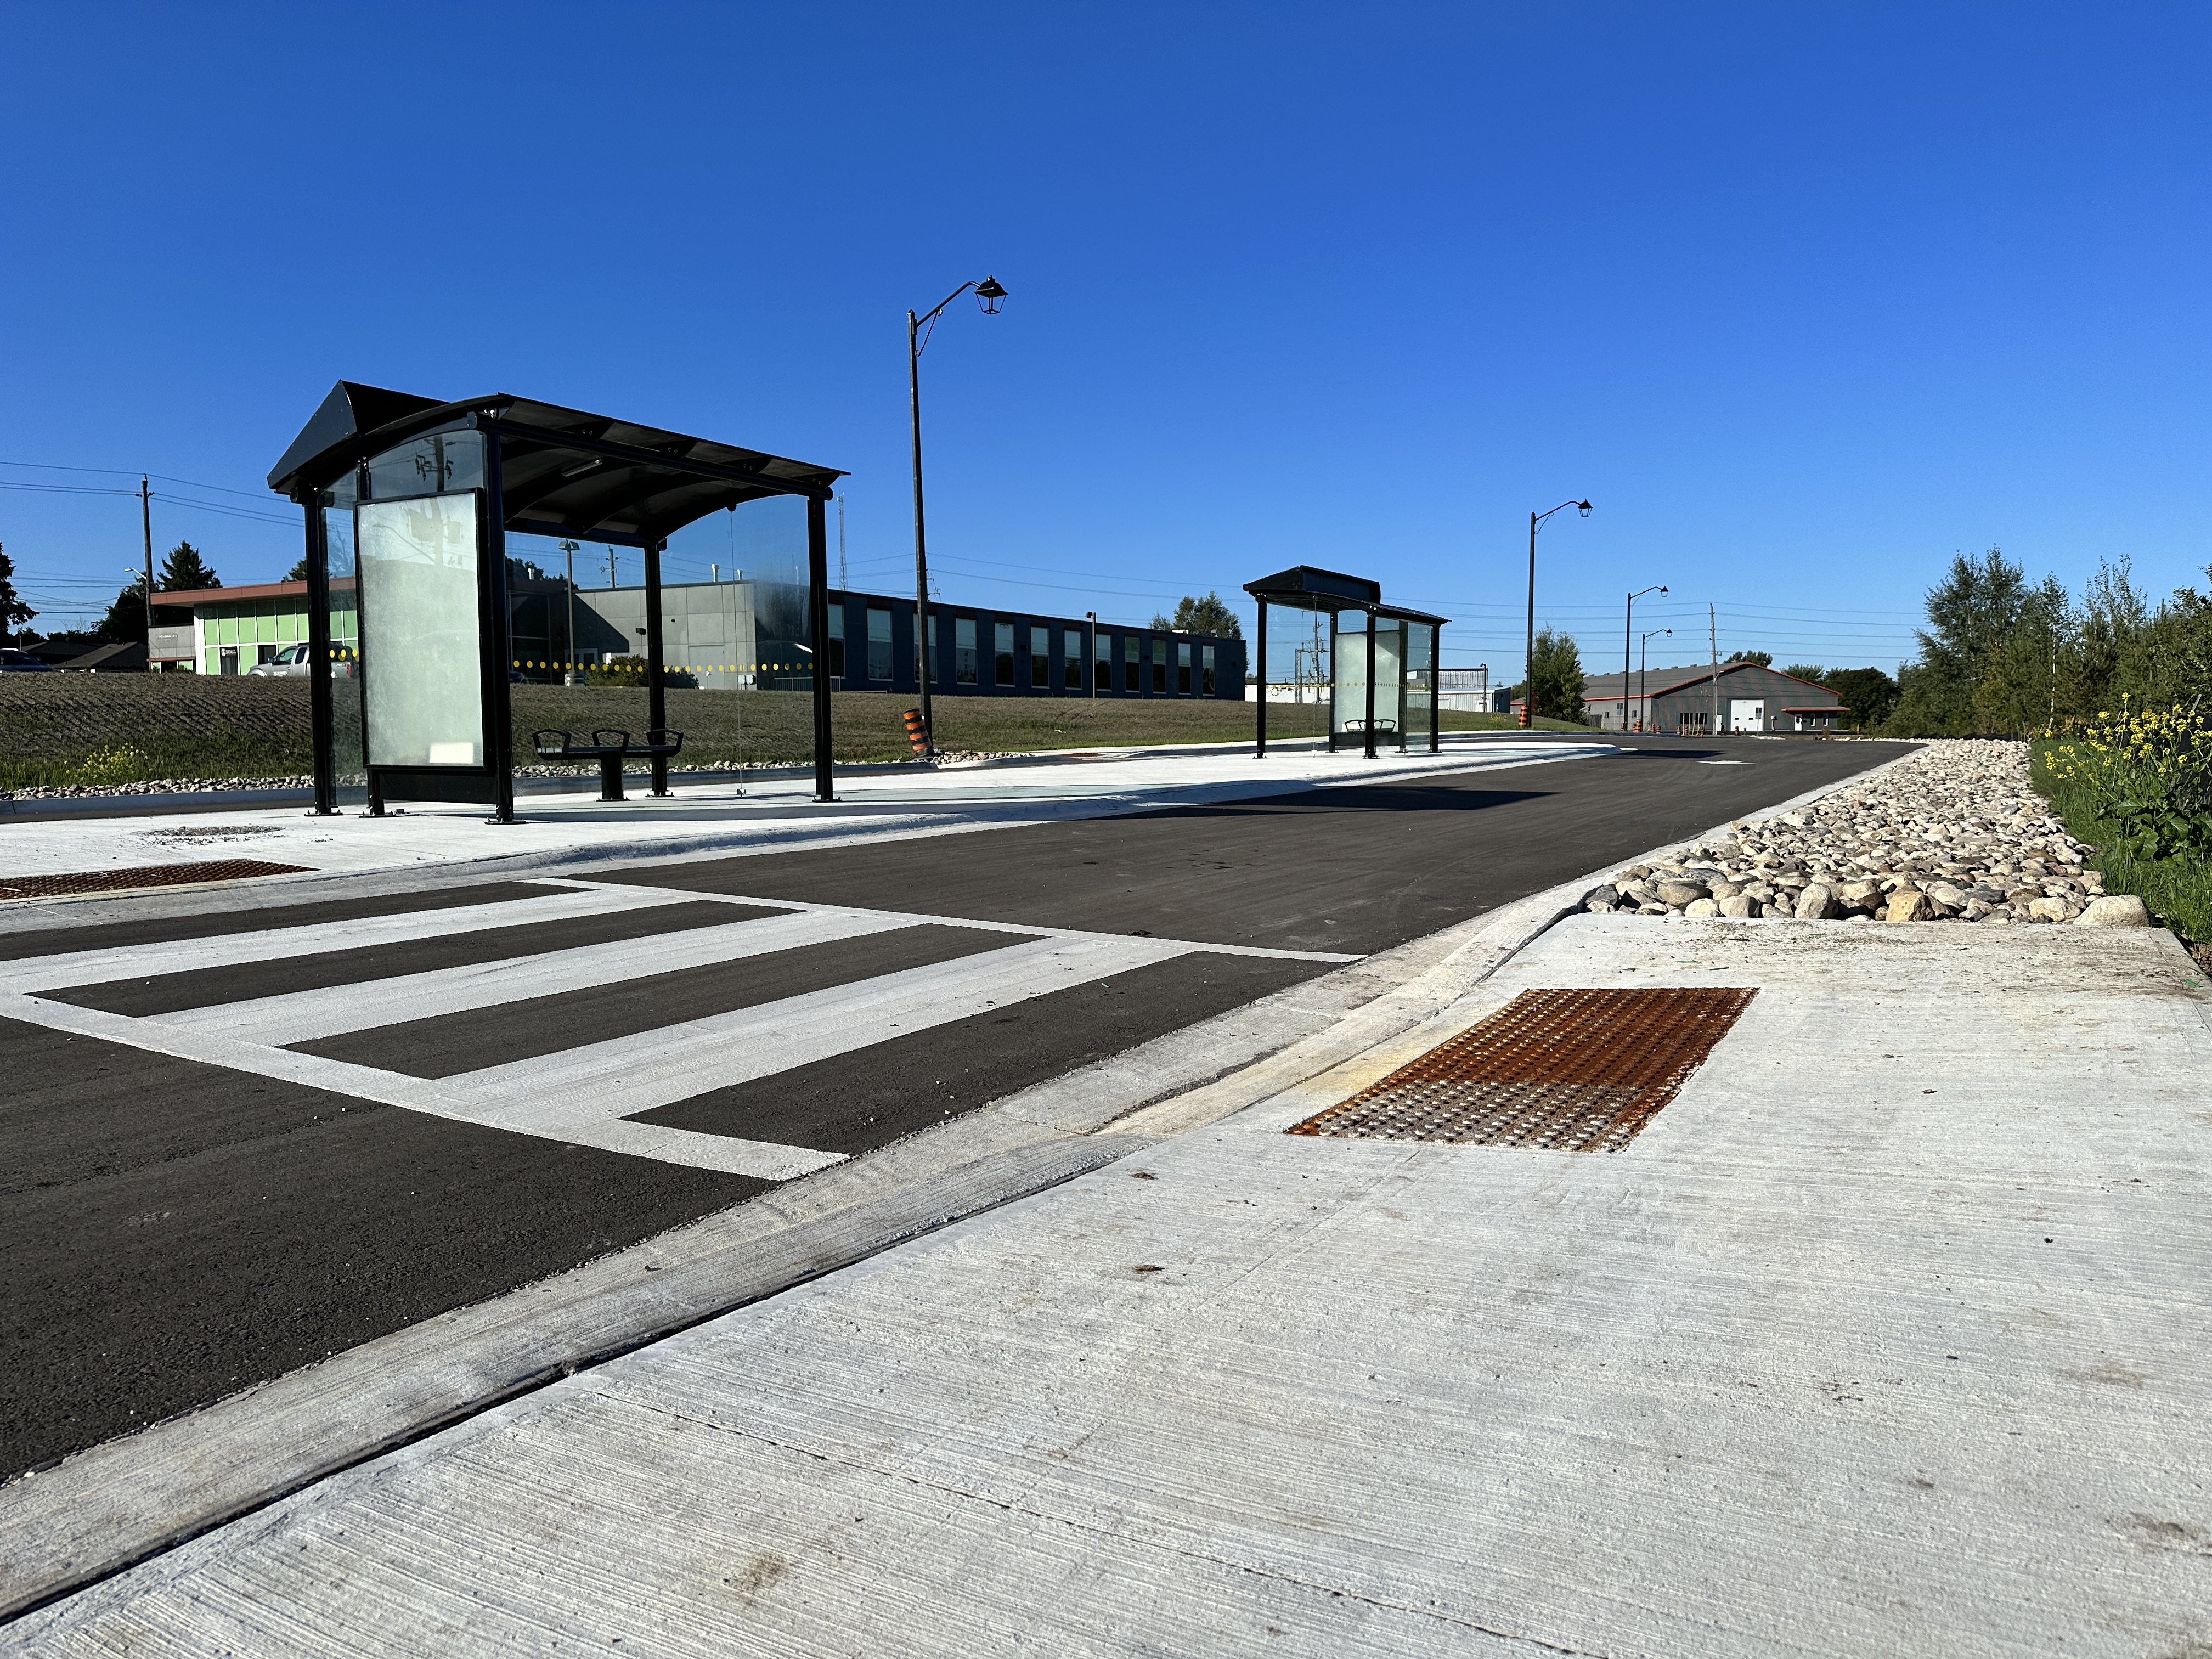 Town of Orangeville's Transit Hub